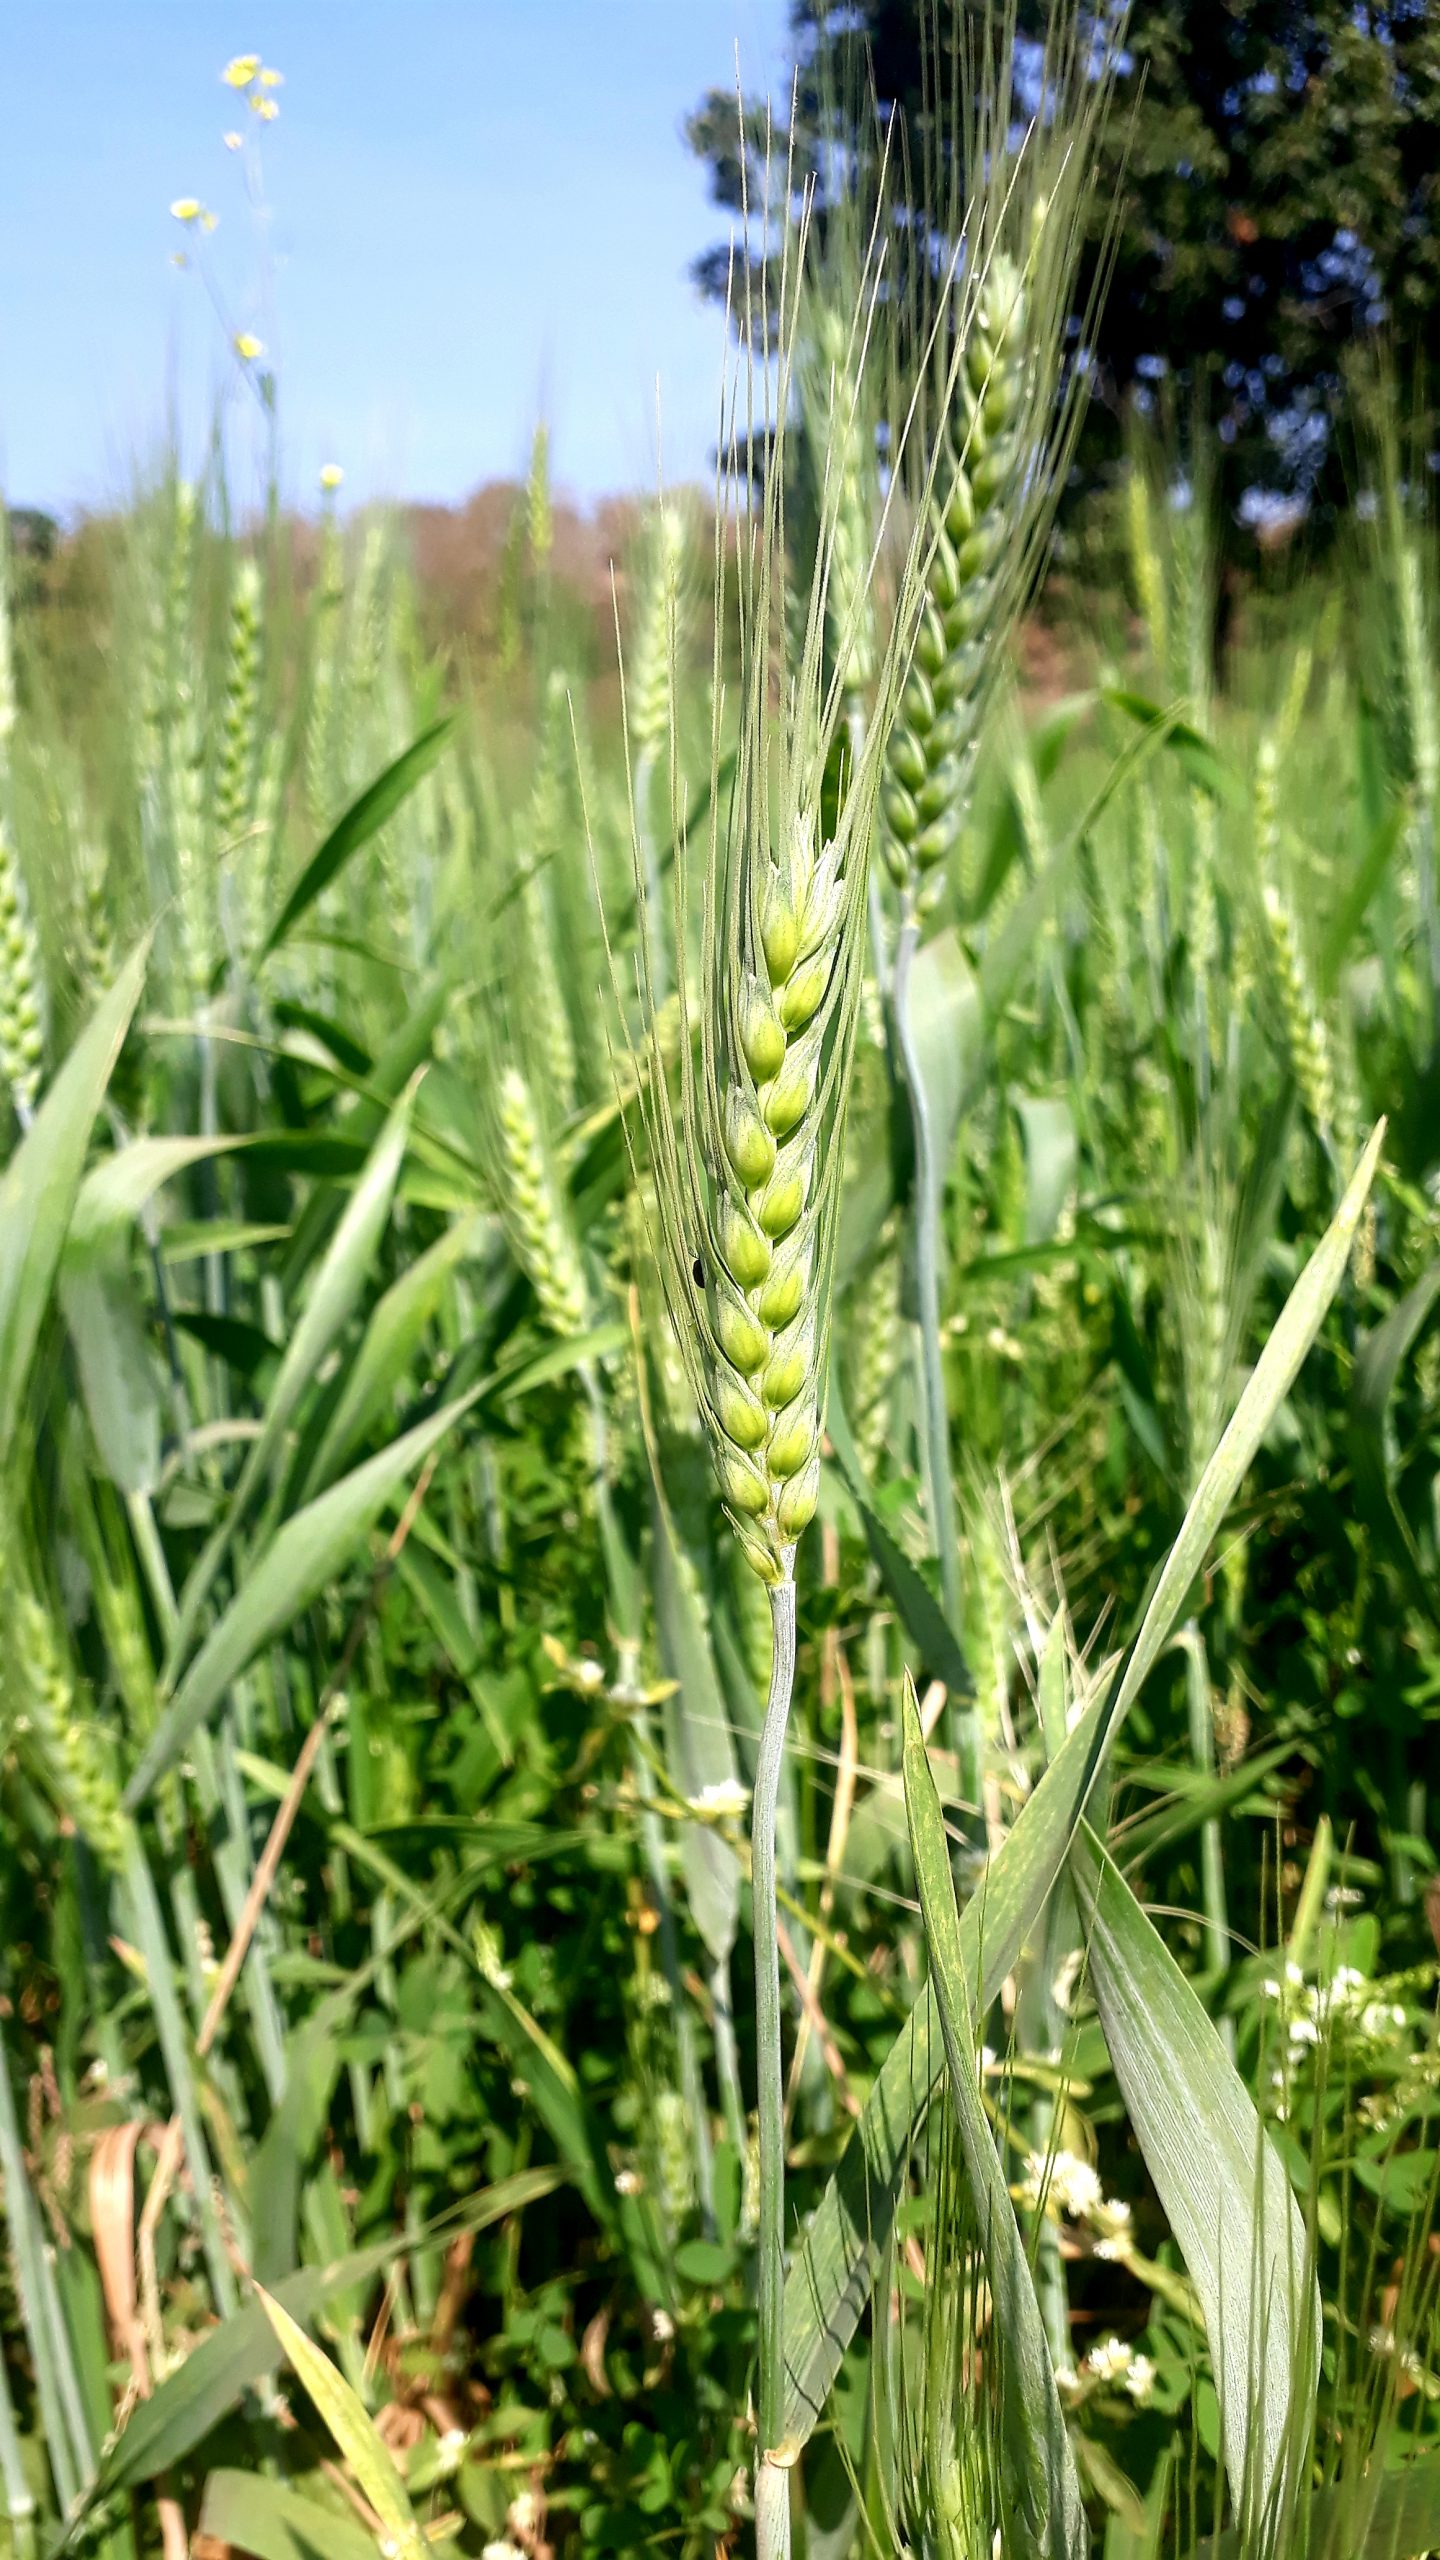 Wheat plants in a field